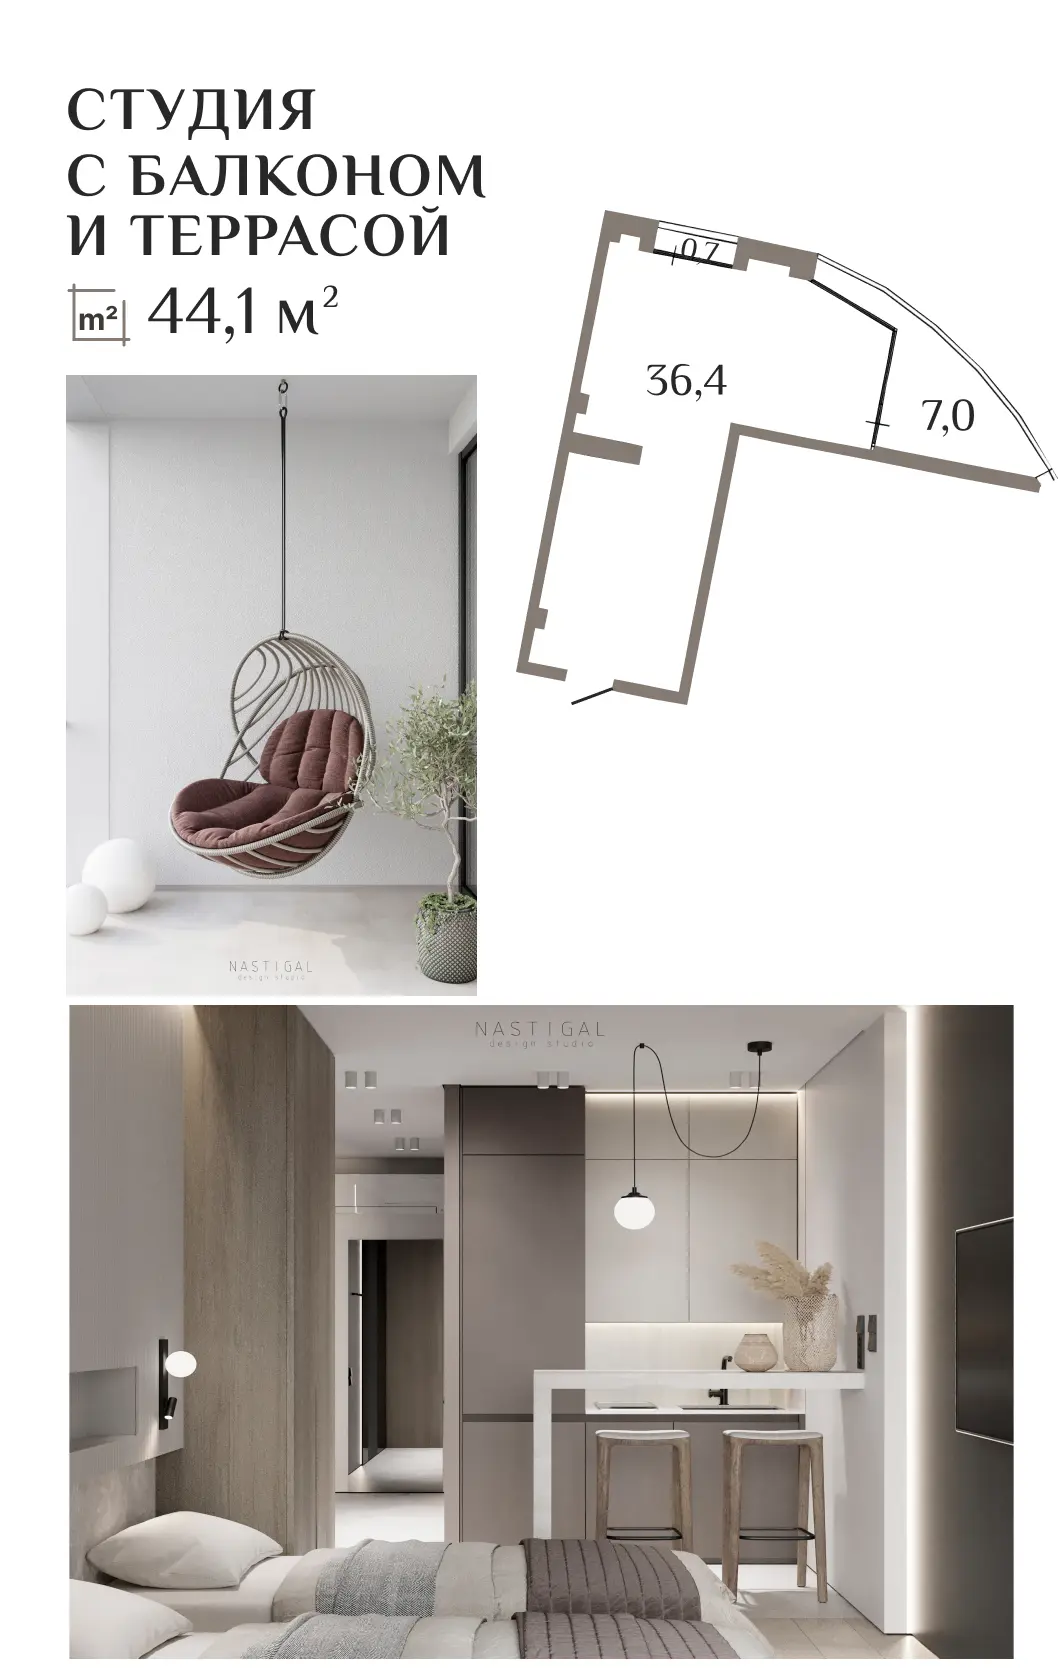 АК ГОРКА – планировка и фотографии аппартаментов - студии 44 кв.м.